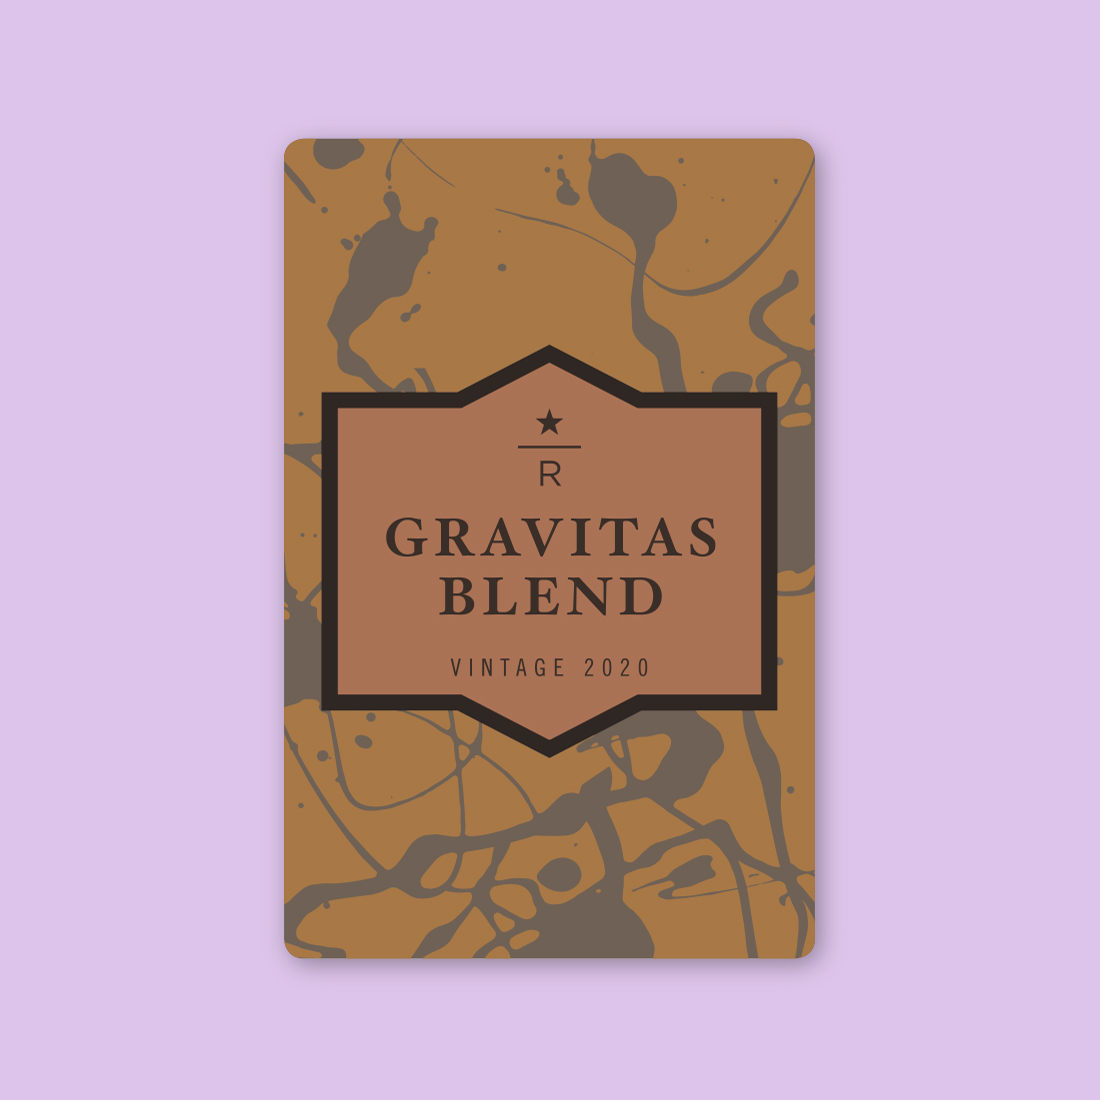 Coffee card illustration for GRAVITAS® BLEND VINTAGE 2020